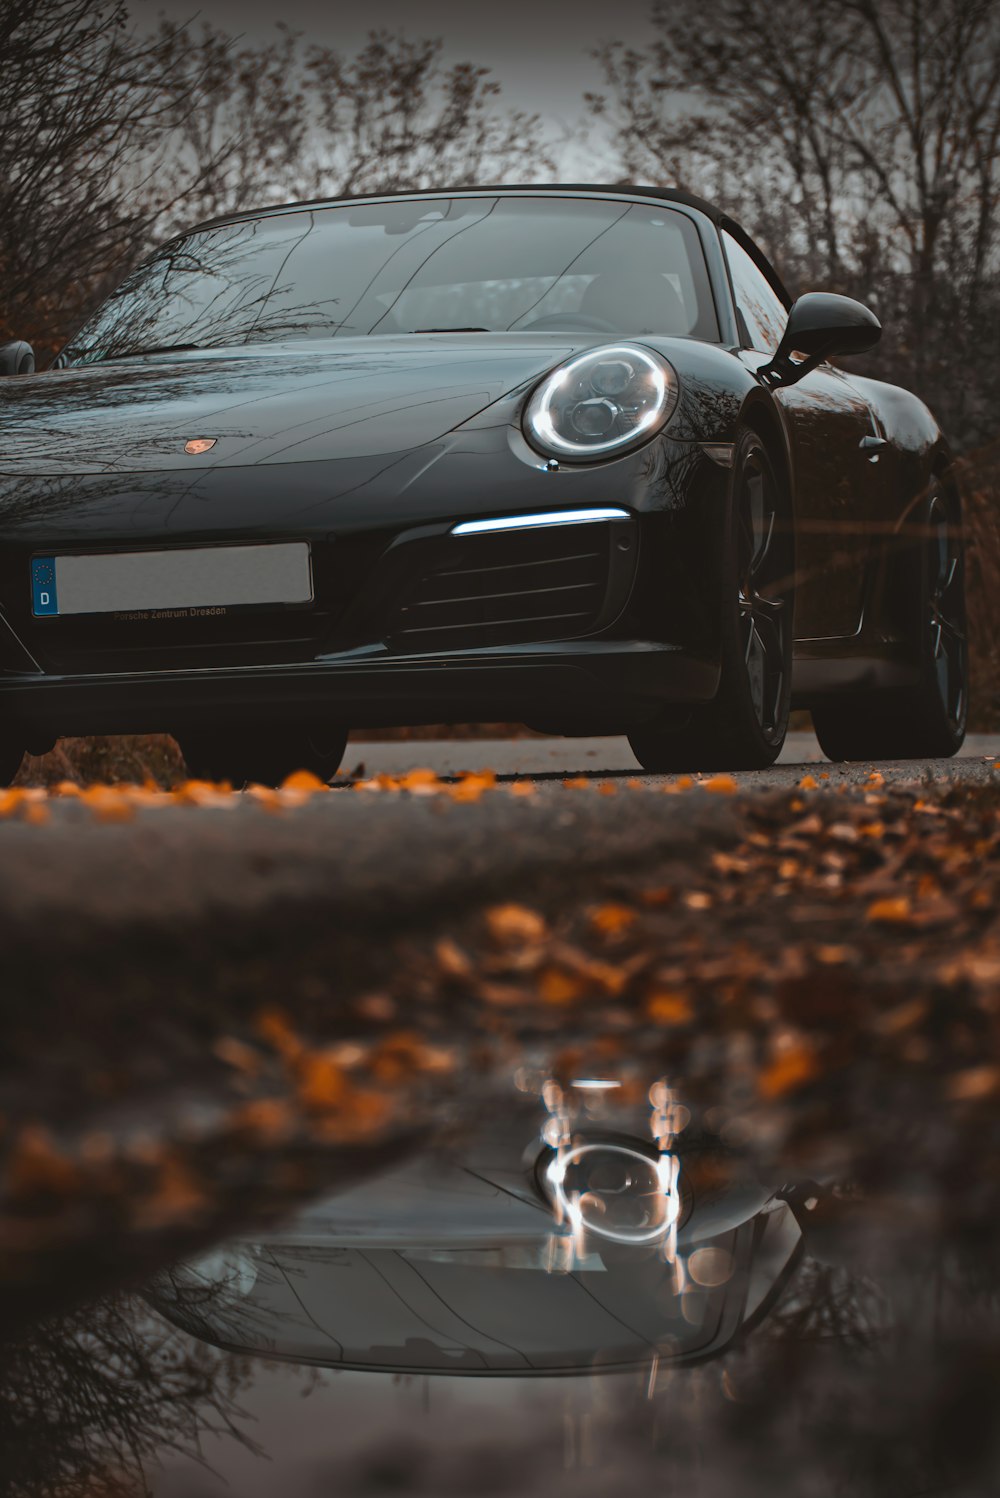 Chiếc xe đen Porsche 911 trên đường phố cho thấy sức hút của xe thể thao đến từ ngoại hình cơ bắp và đẳng cấp, hứa hẹn sẽ mang lại trải nghiệm lái xe thật thú vị cho bạn. Tải về hình ảnh để cảm nhận thêm.